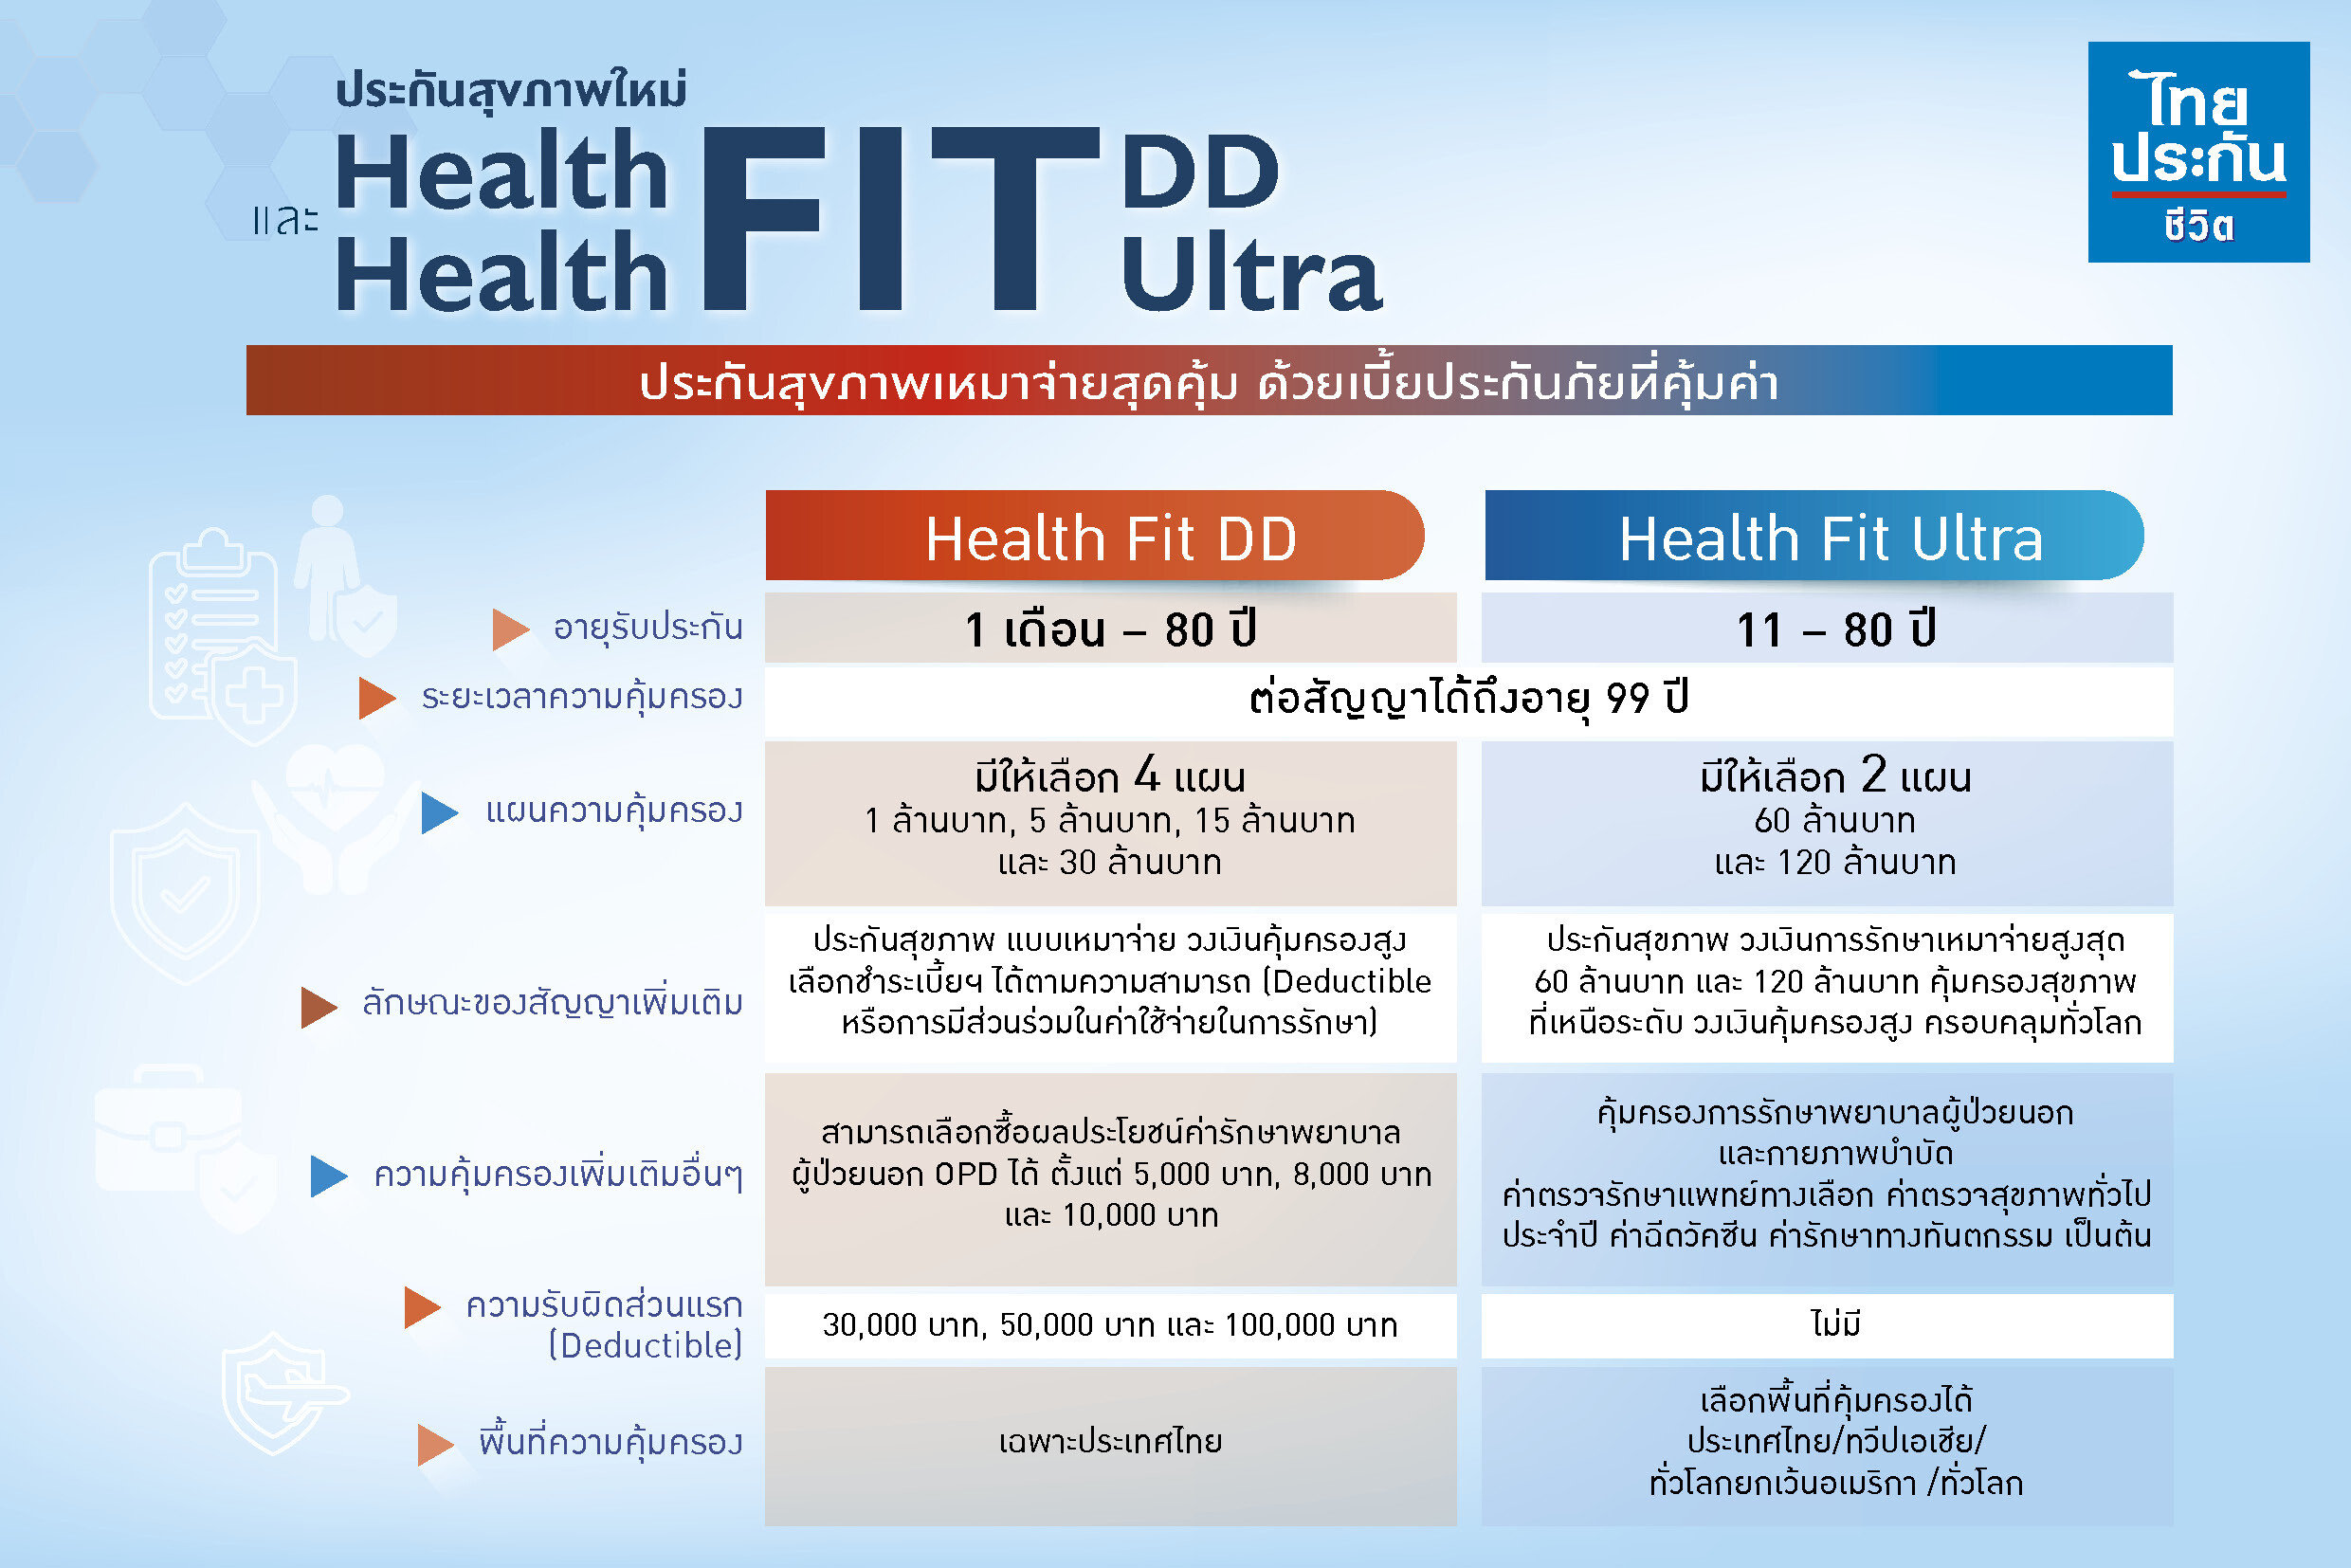 ไทยประกันชีวิต ส่งประกันสุขภาพเหมาจ่ายสุดคุ้ม "Health Fit DD" และ "Health Fit Ultra" วงเงินความคุ้มครองสูง